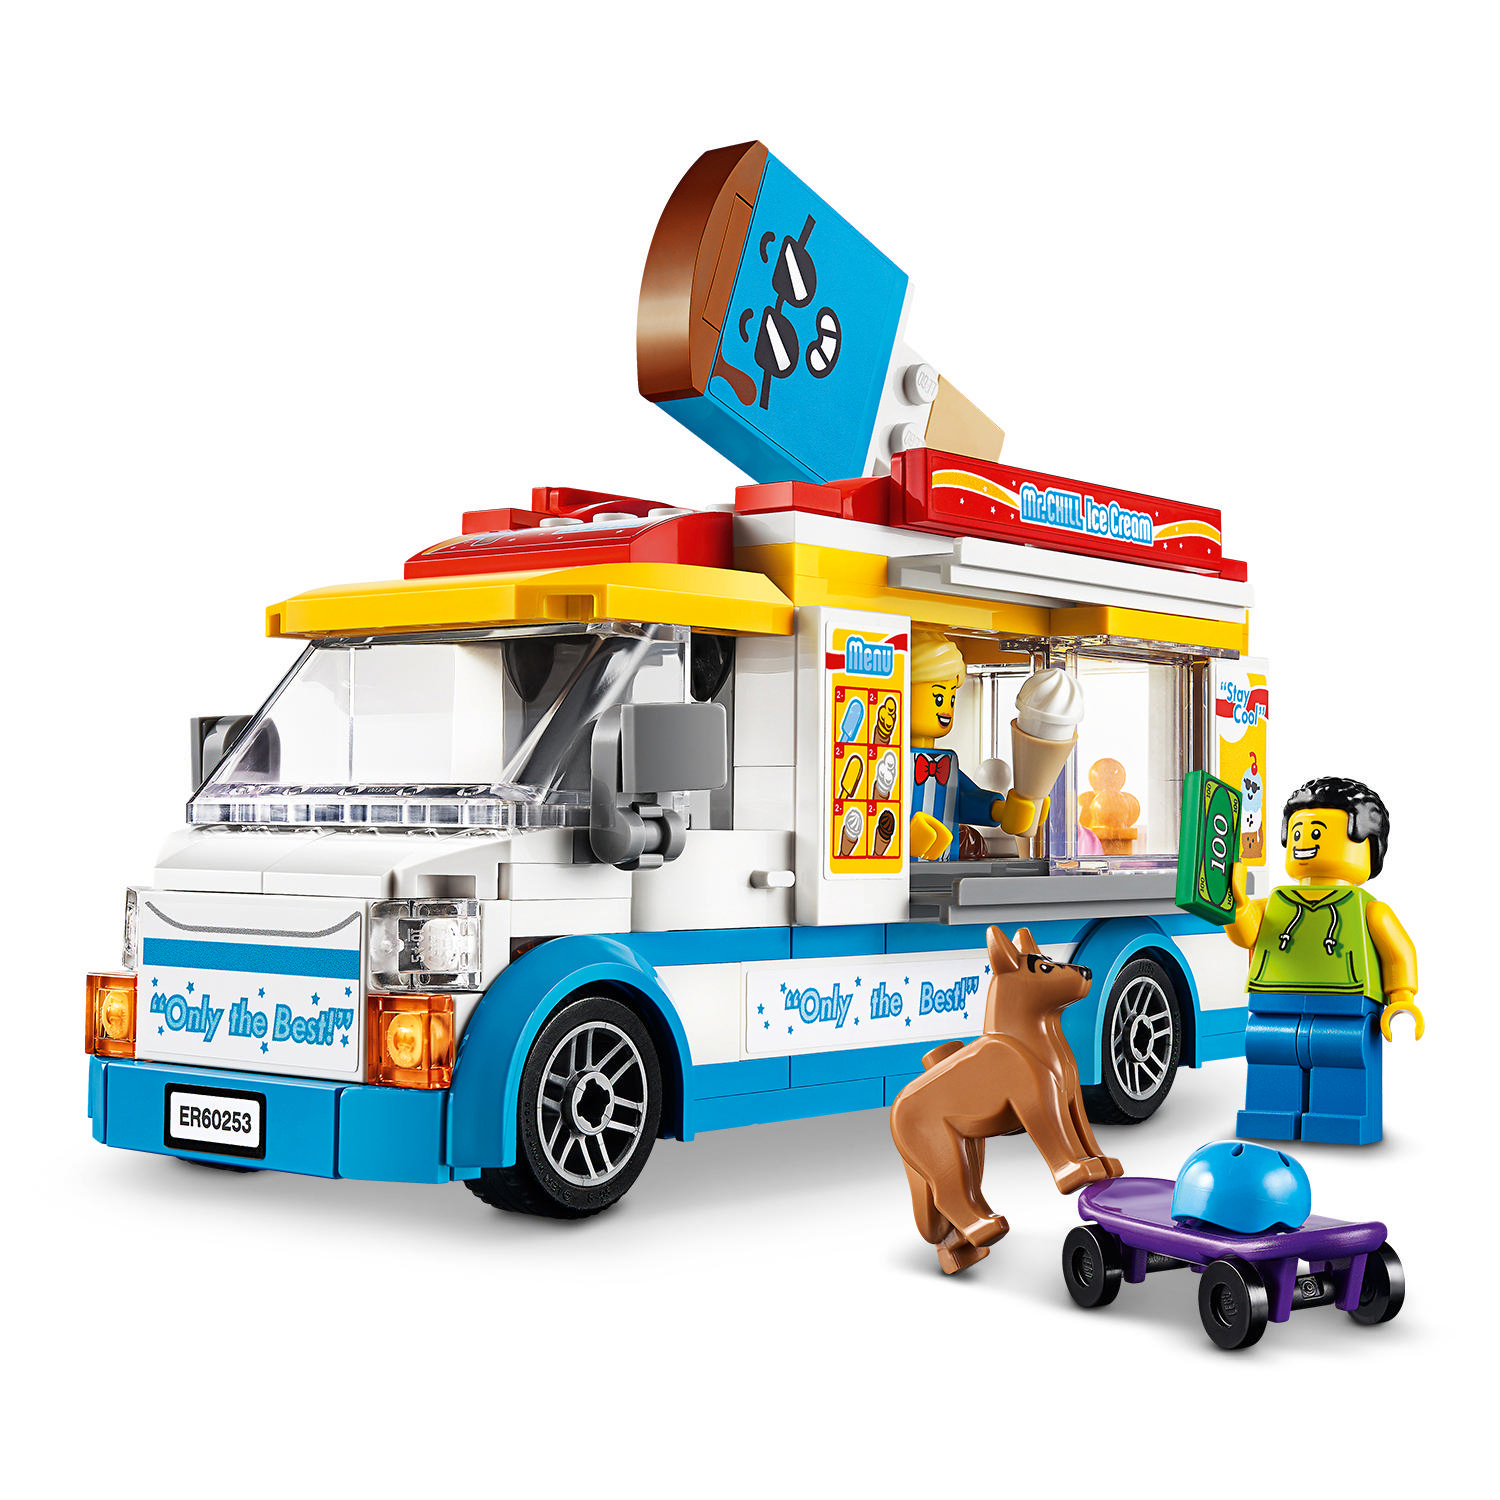 LEGO City 60253 Mehrfarbig Eiswagen Bausatz